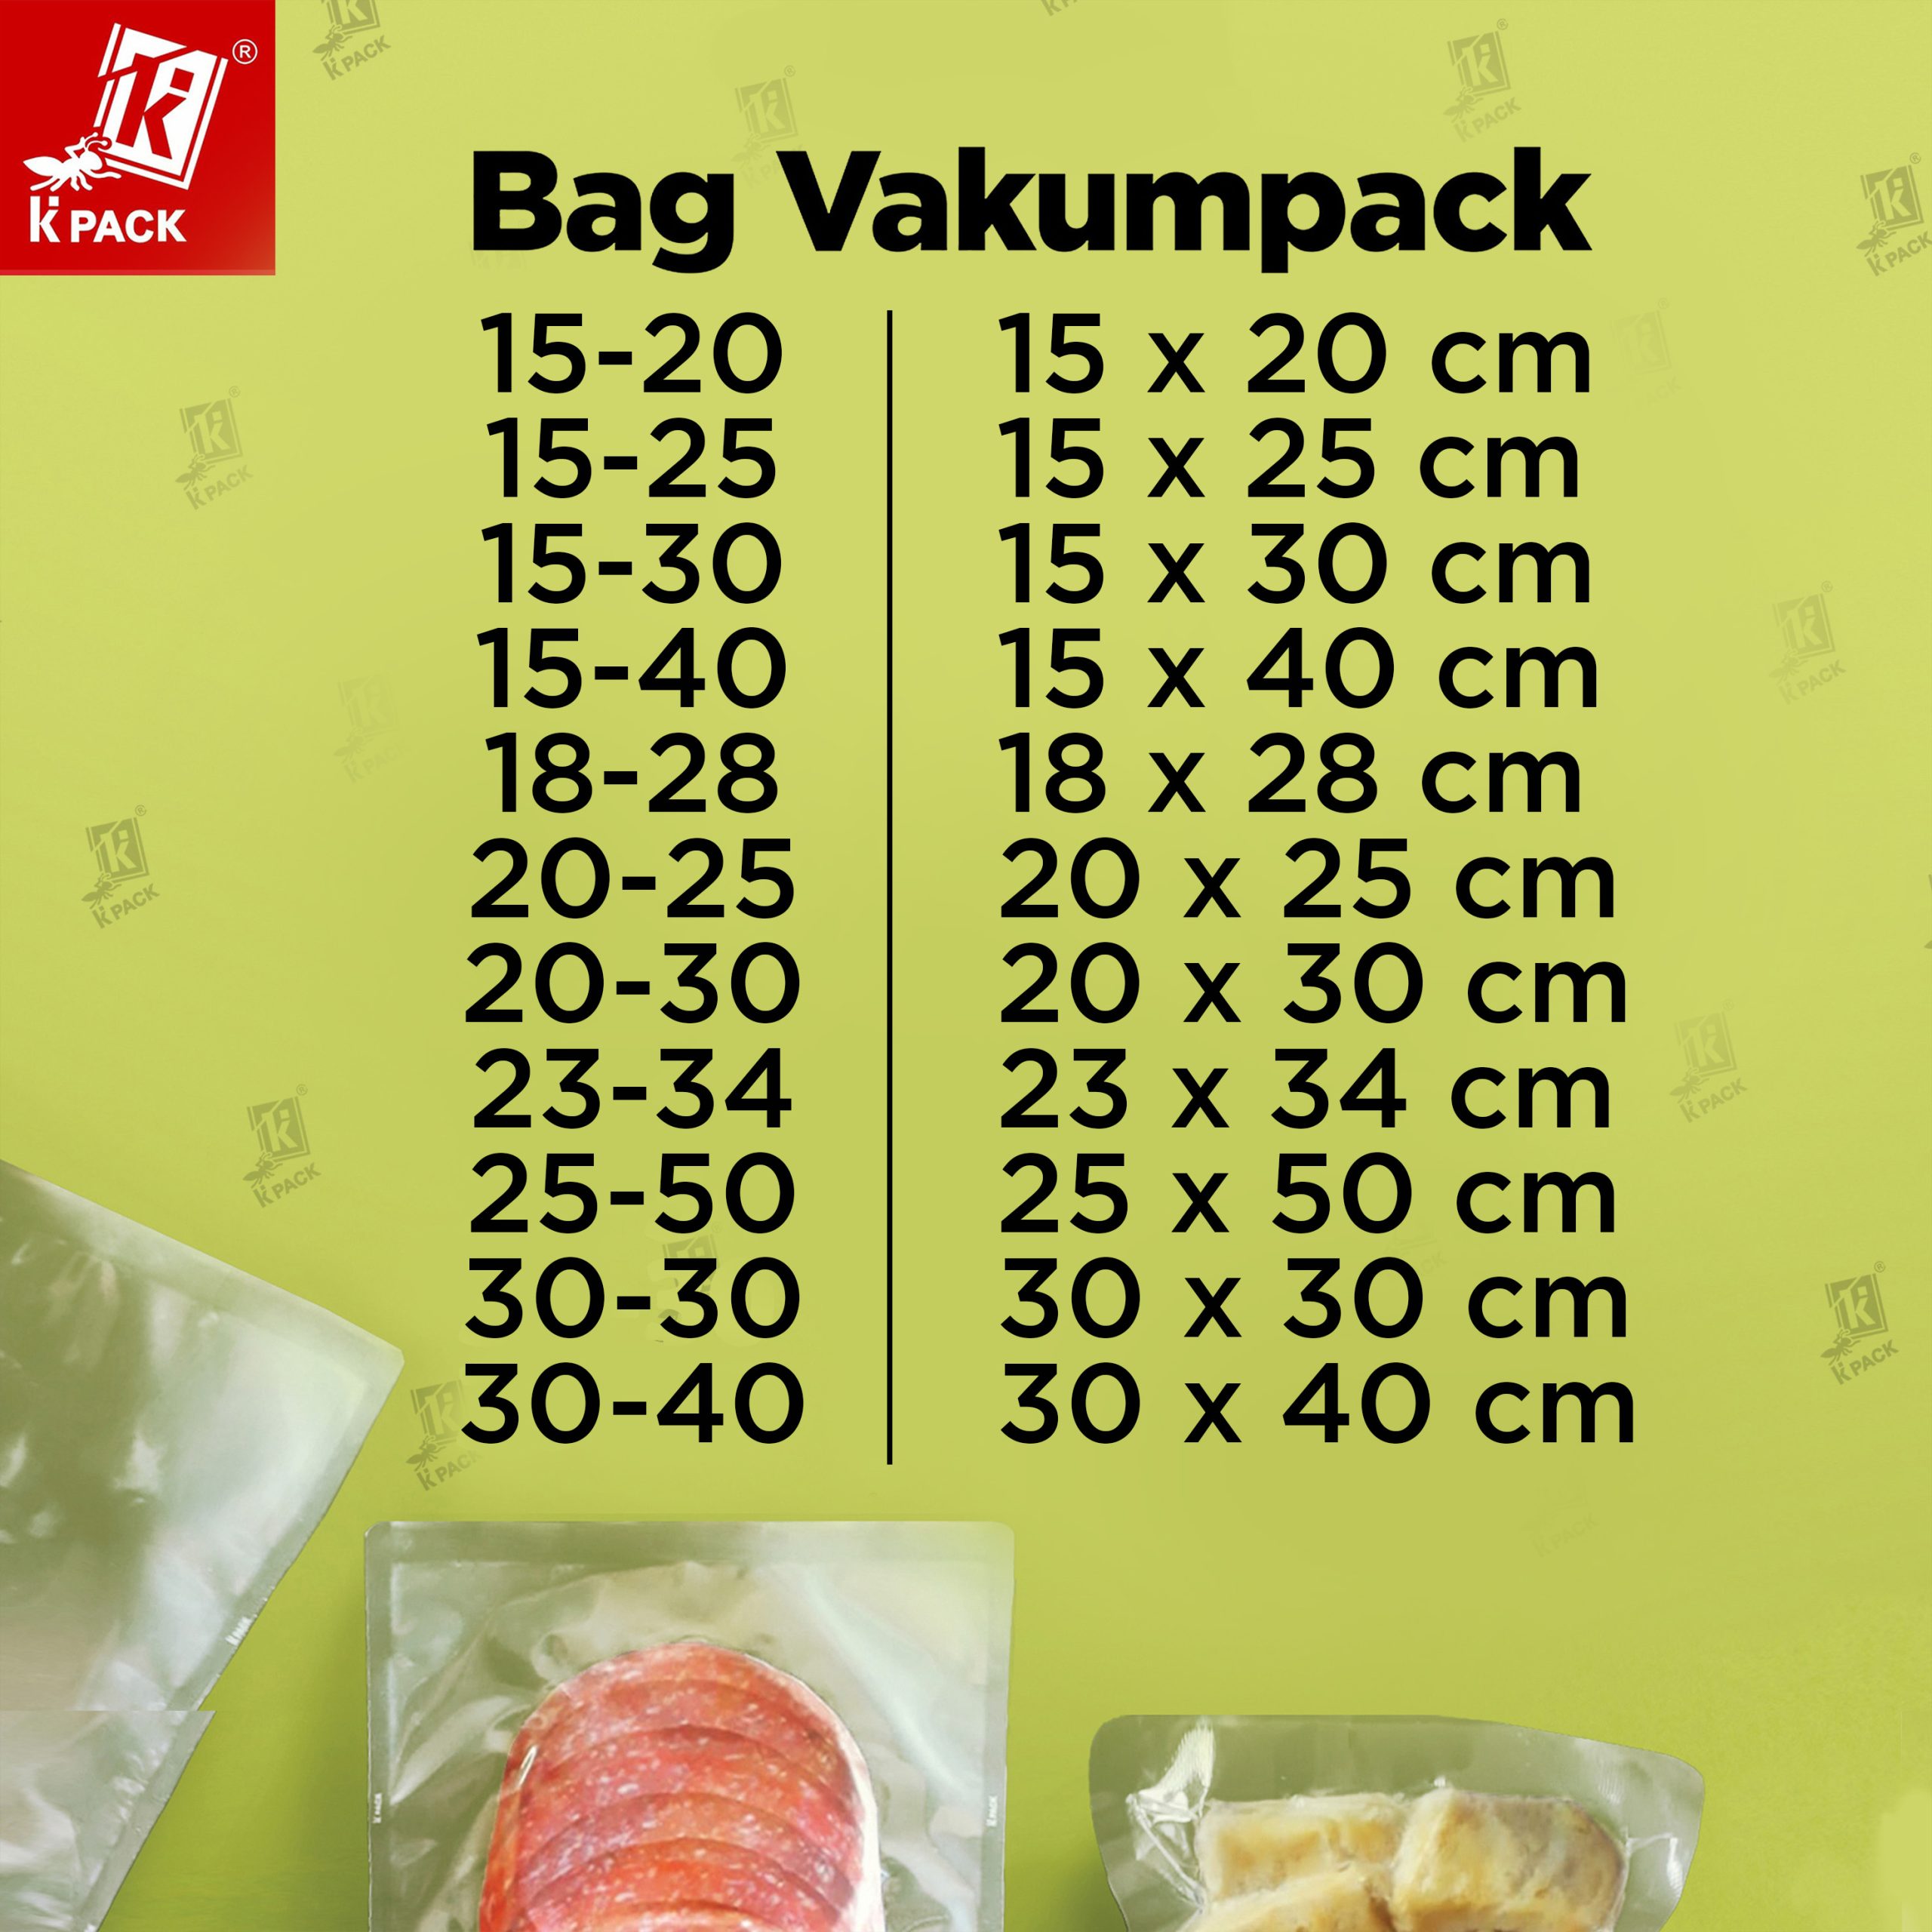 Bag Vakumpack ukuran 1.1